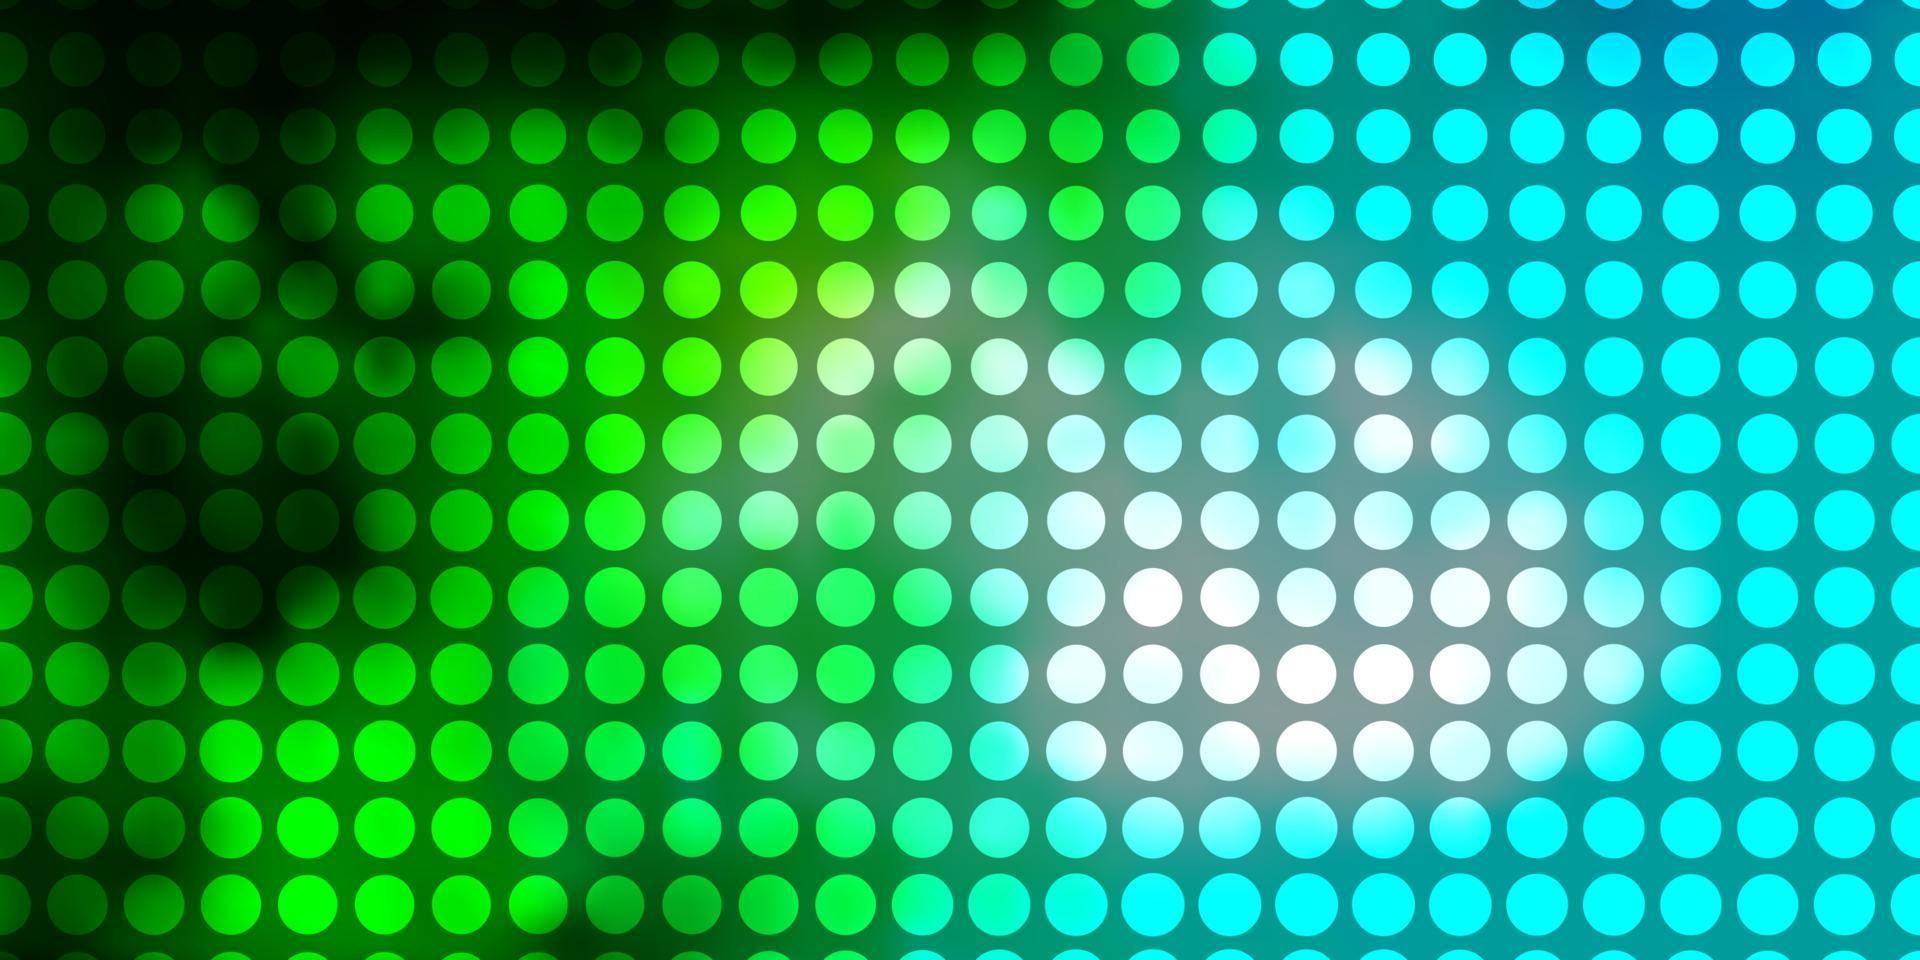 ljusblå, grön vektorlayout med cirklar. vektor